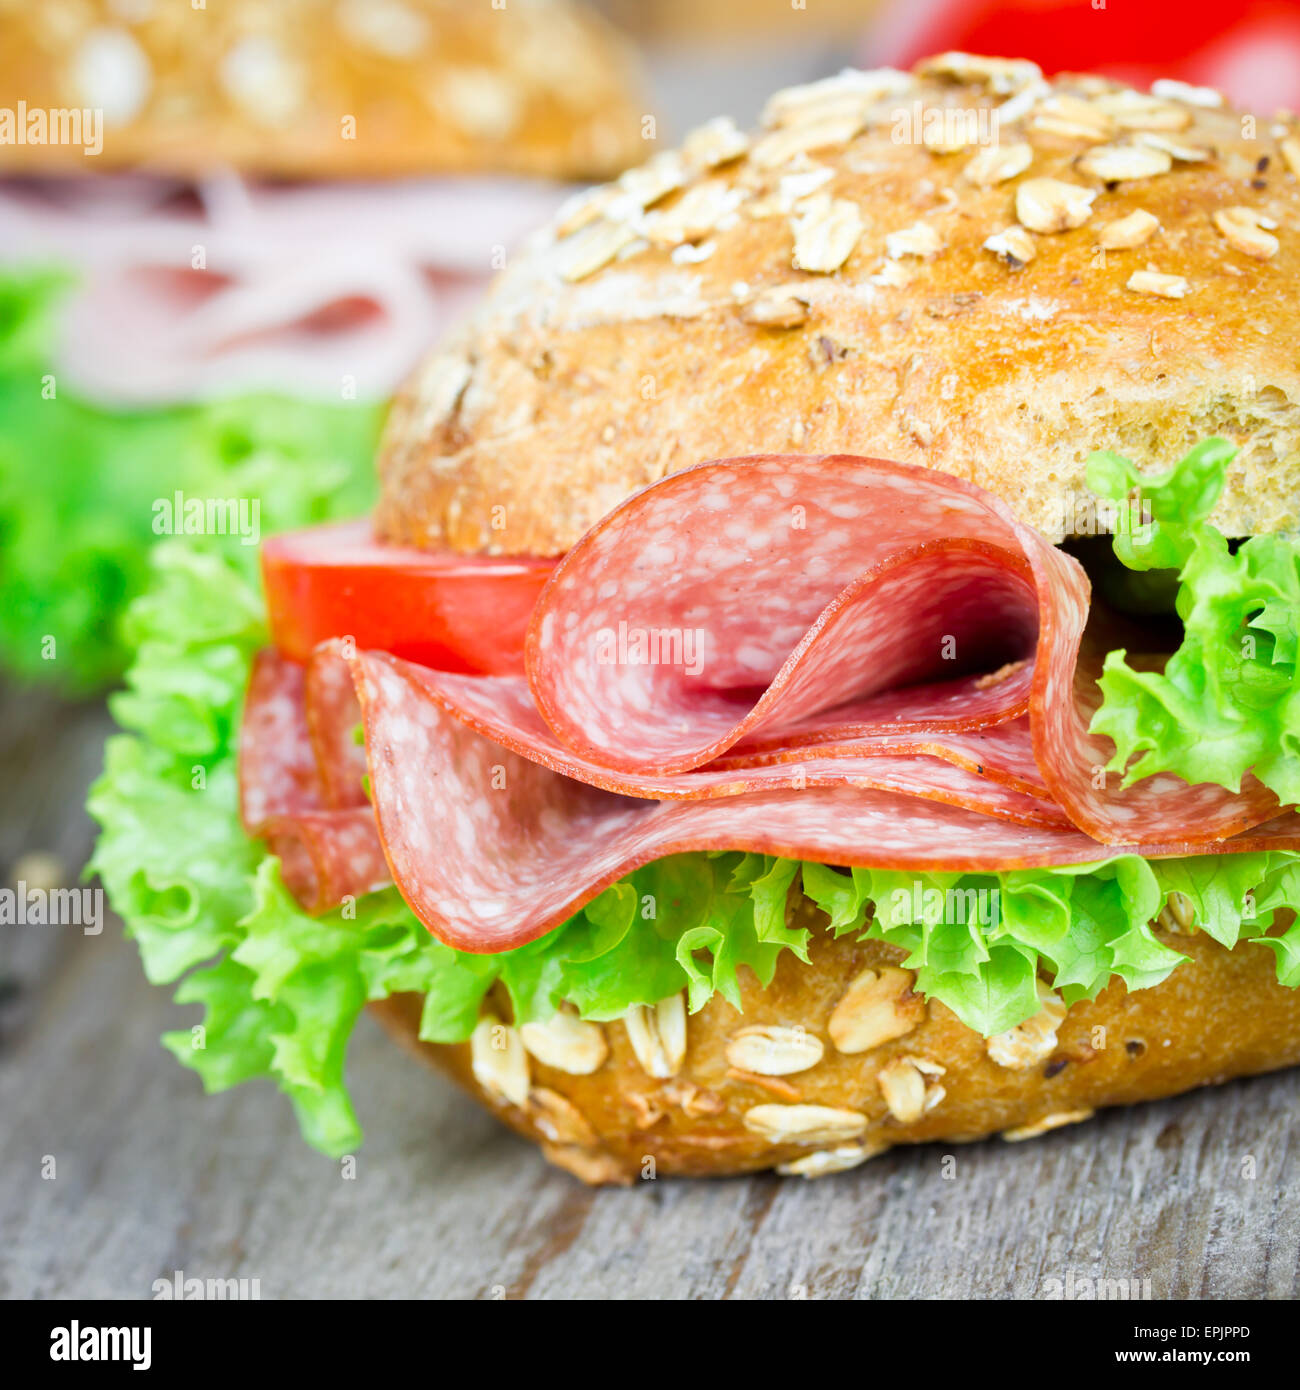 bun with salami Stock Photo